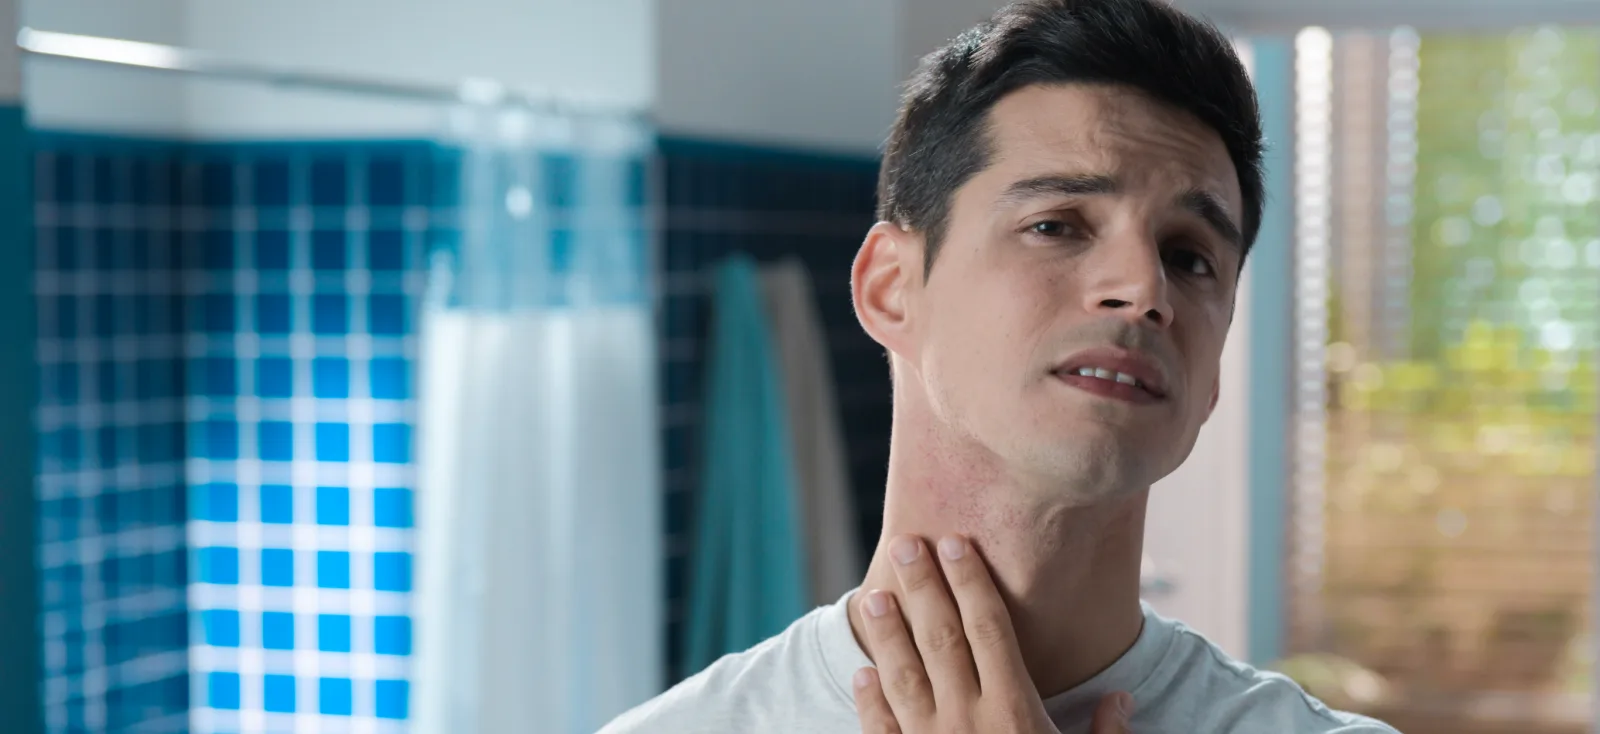 Sabías que más del 56% de los hombres sufre de irritación al afeitarse